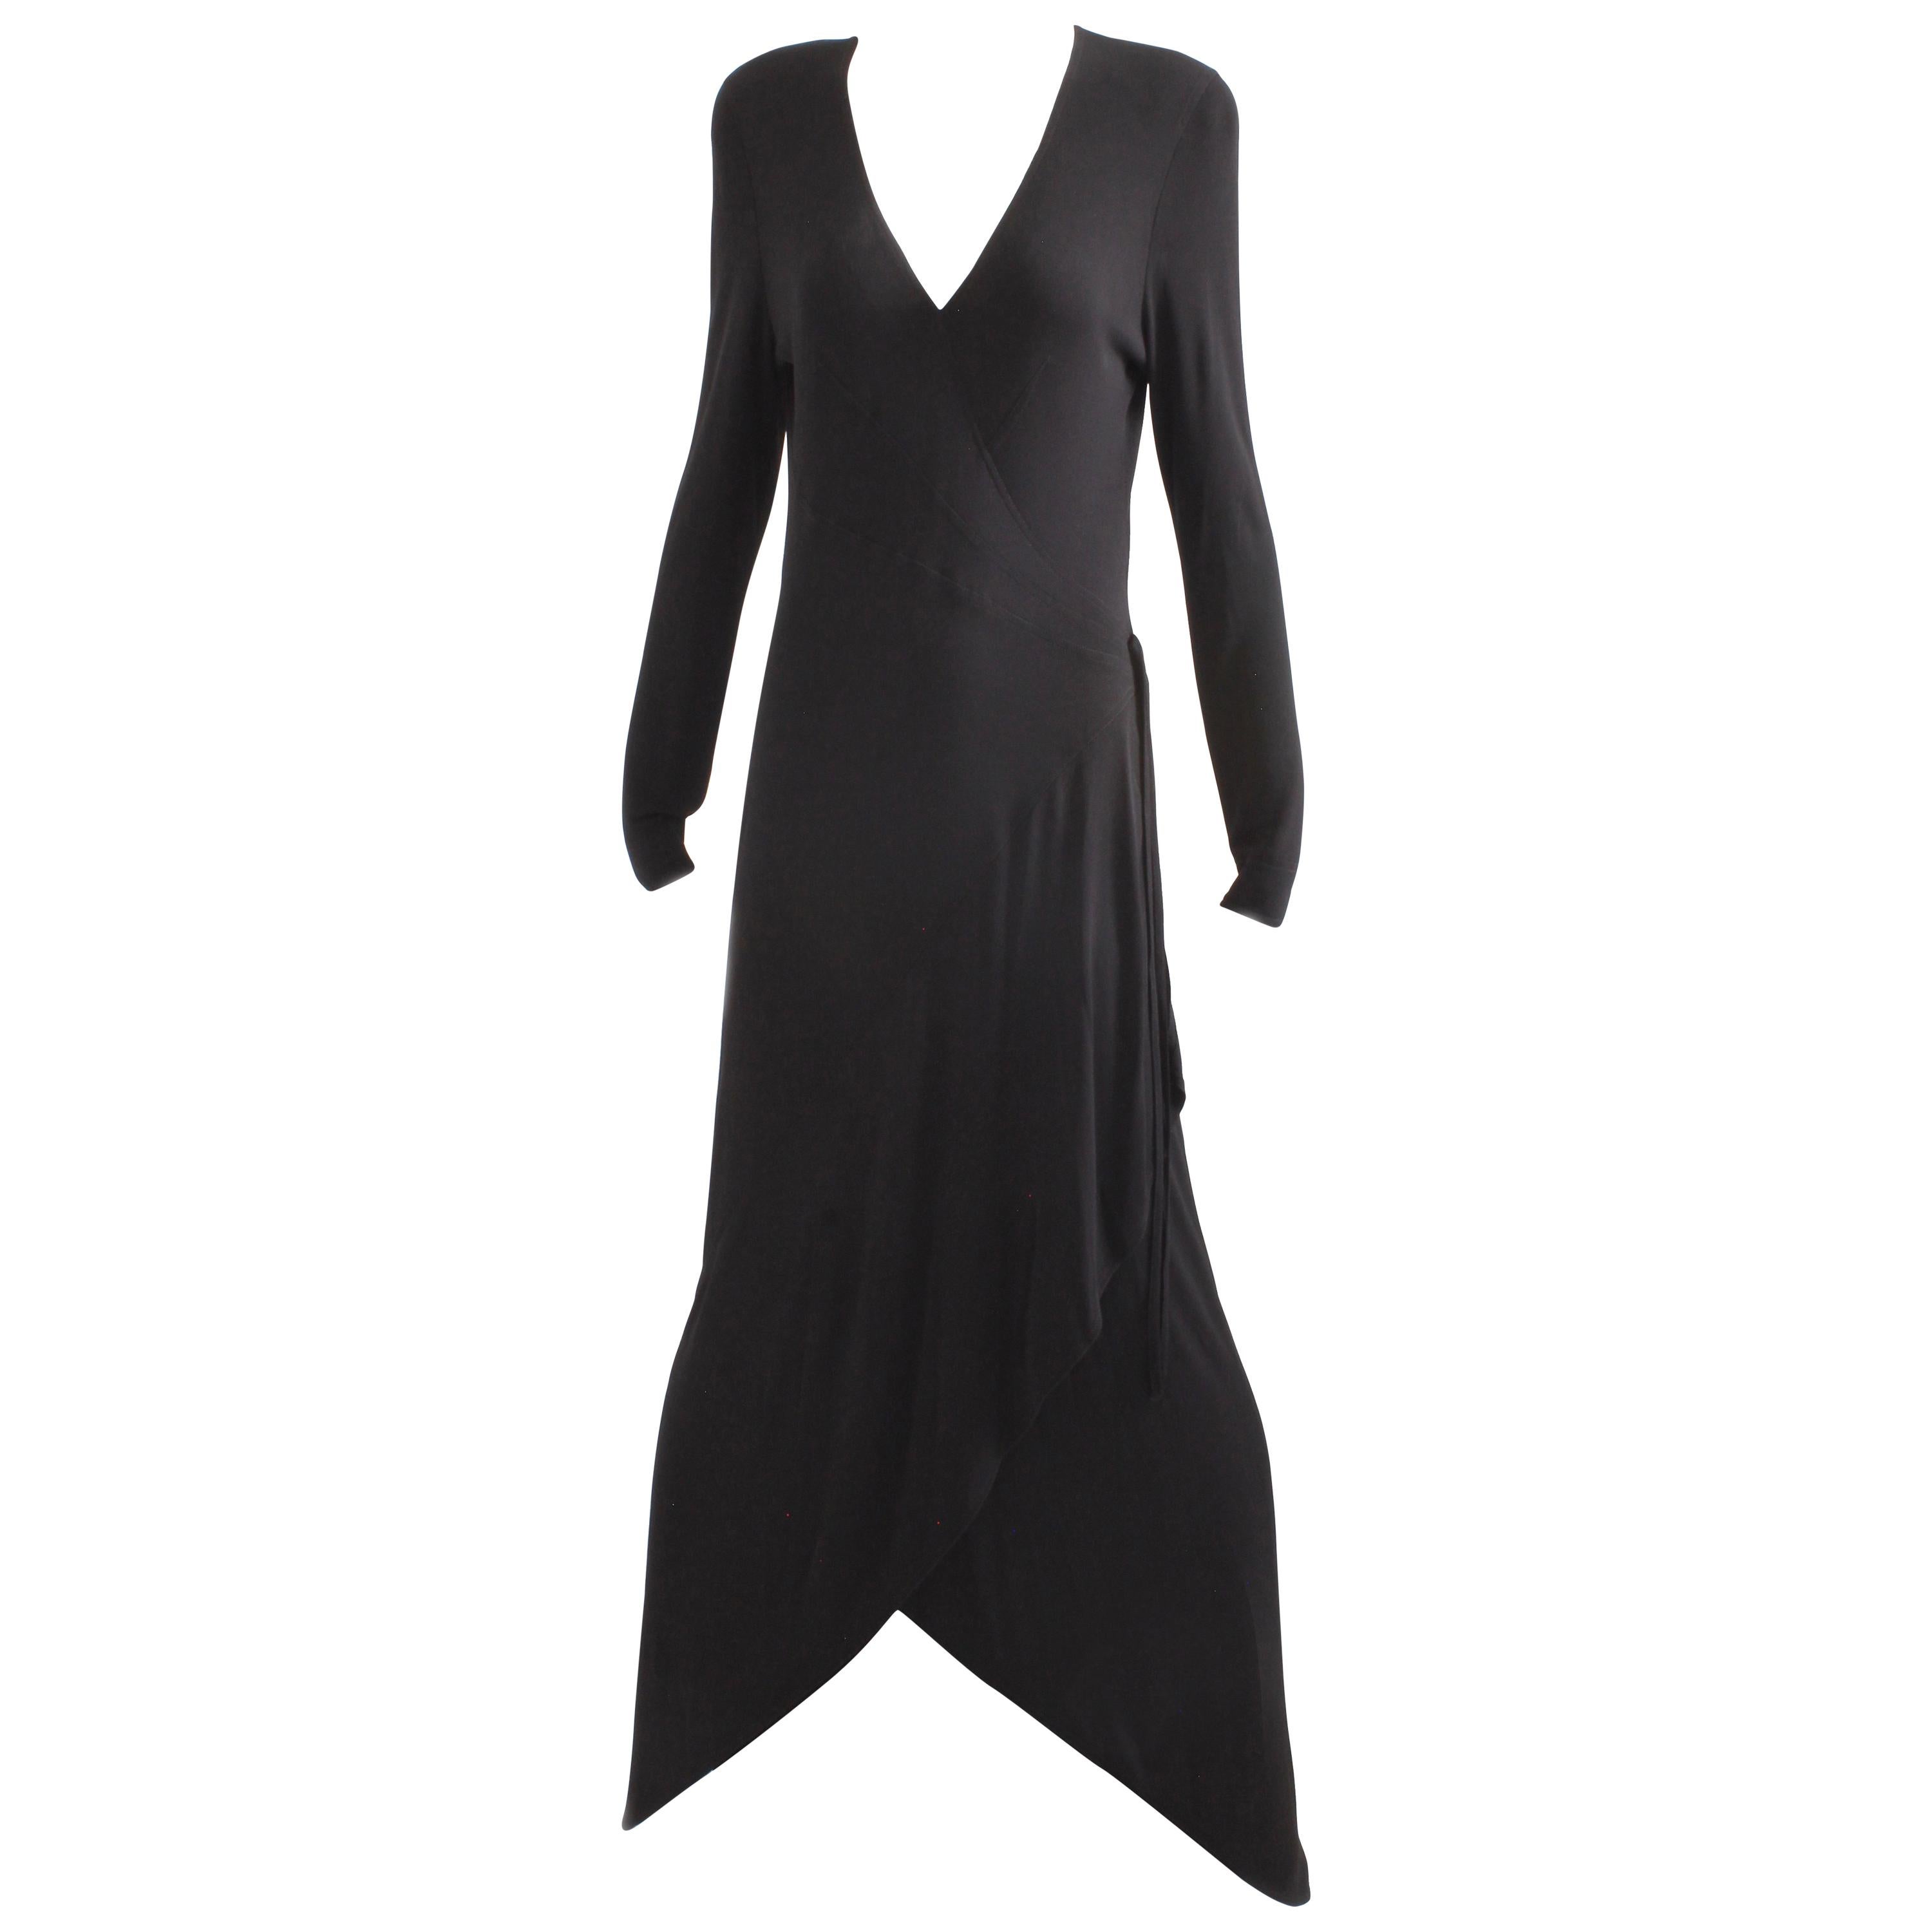 Buy > jean muir vintage dress > in stock